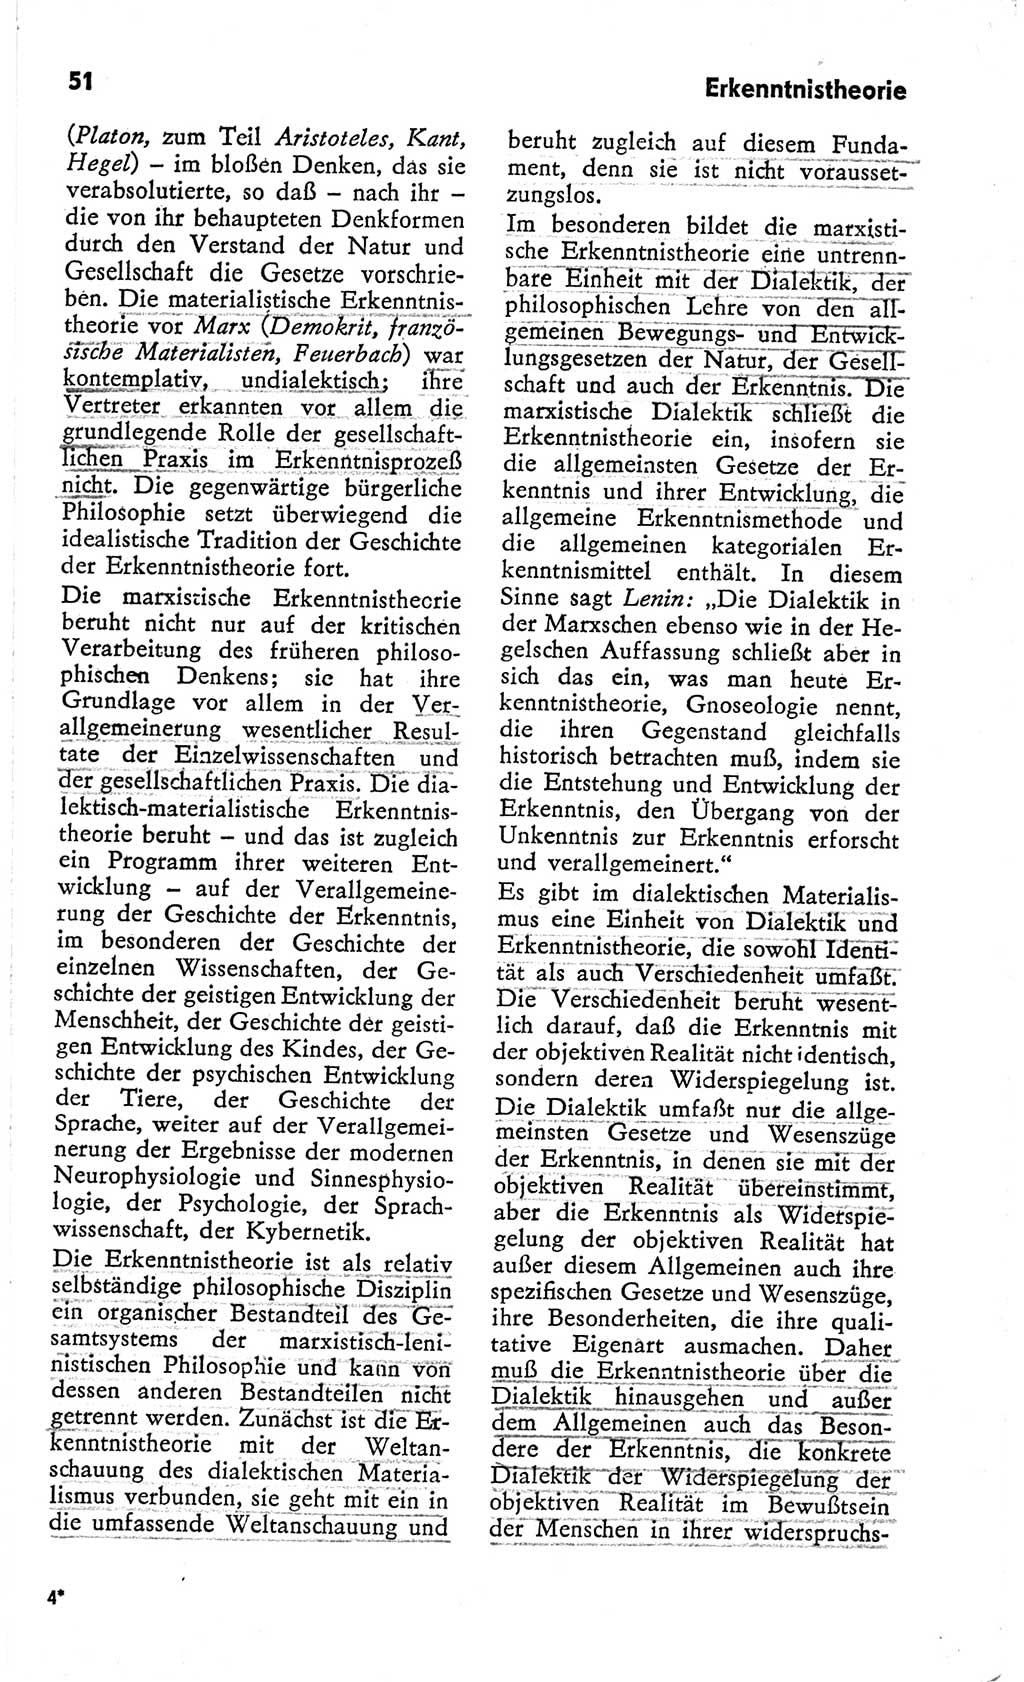 Kleines Wörterbuch der marxistisch-leninistischen Philosophie [Deutsche Demokratische Republik (DDR)] 1966, Seite 51 (Kl. Wb. ML Phil. DDR 1966, S. 51)